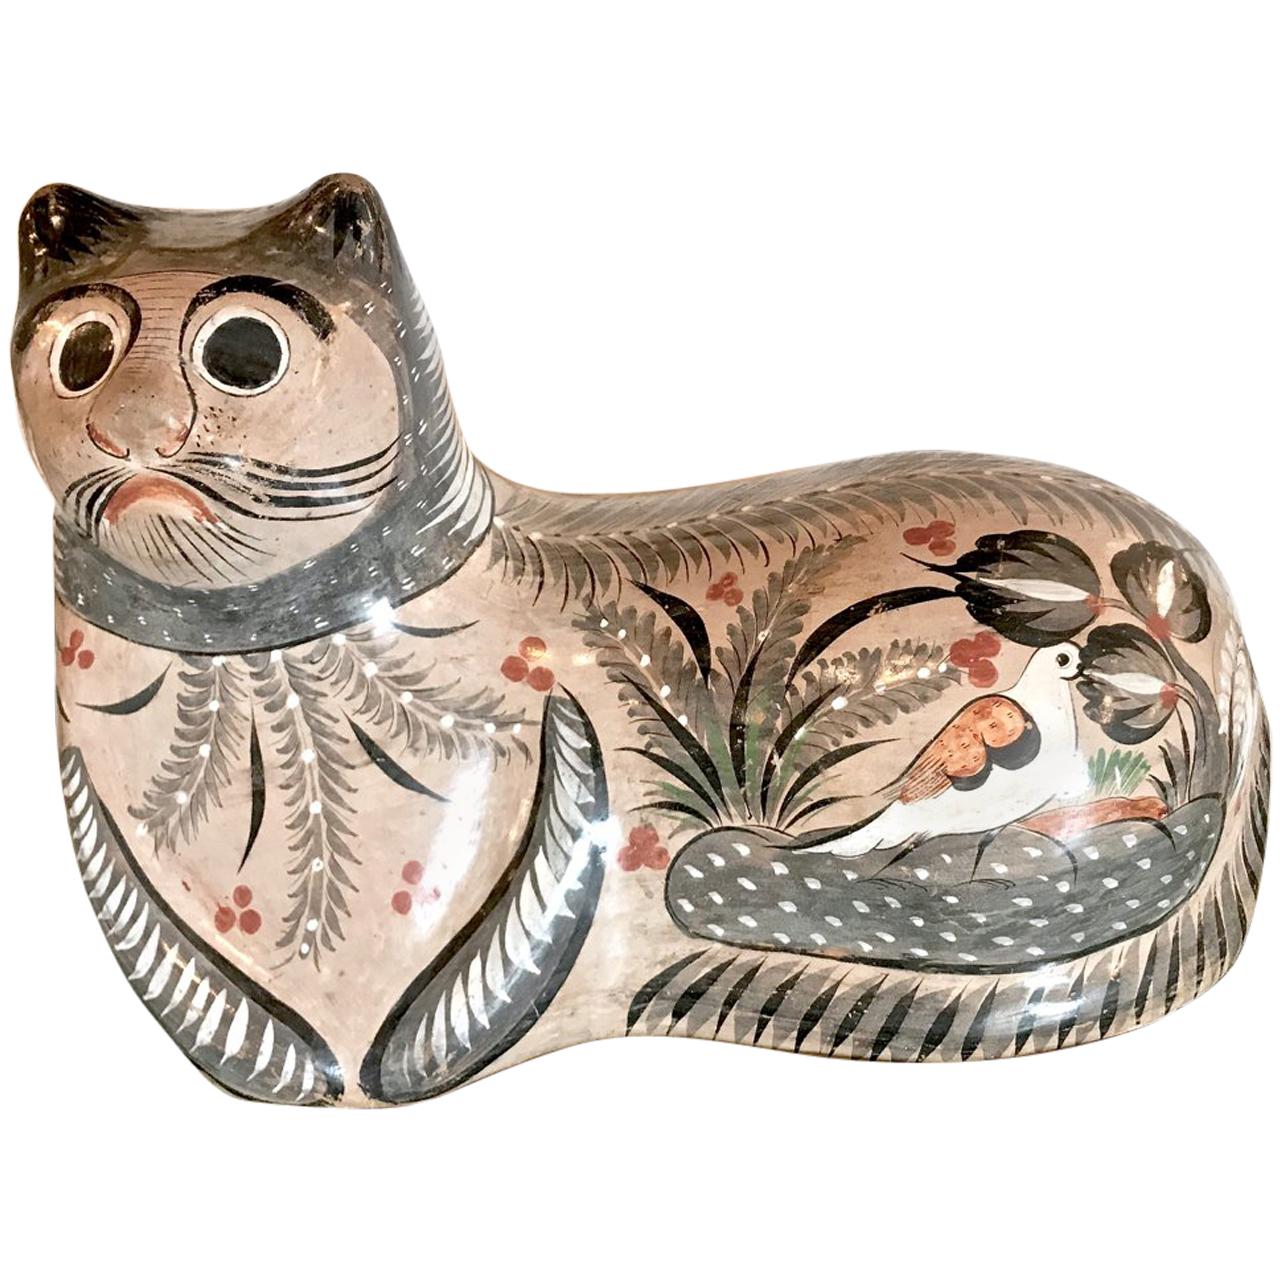 Großes Beispiel einer Tonala-Katze, vom Künstler signiert